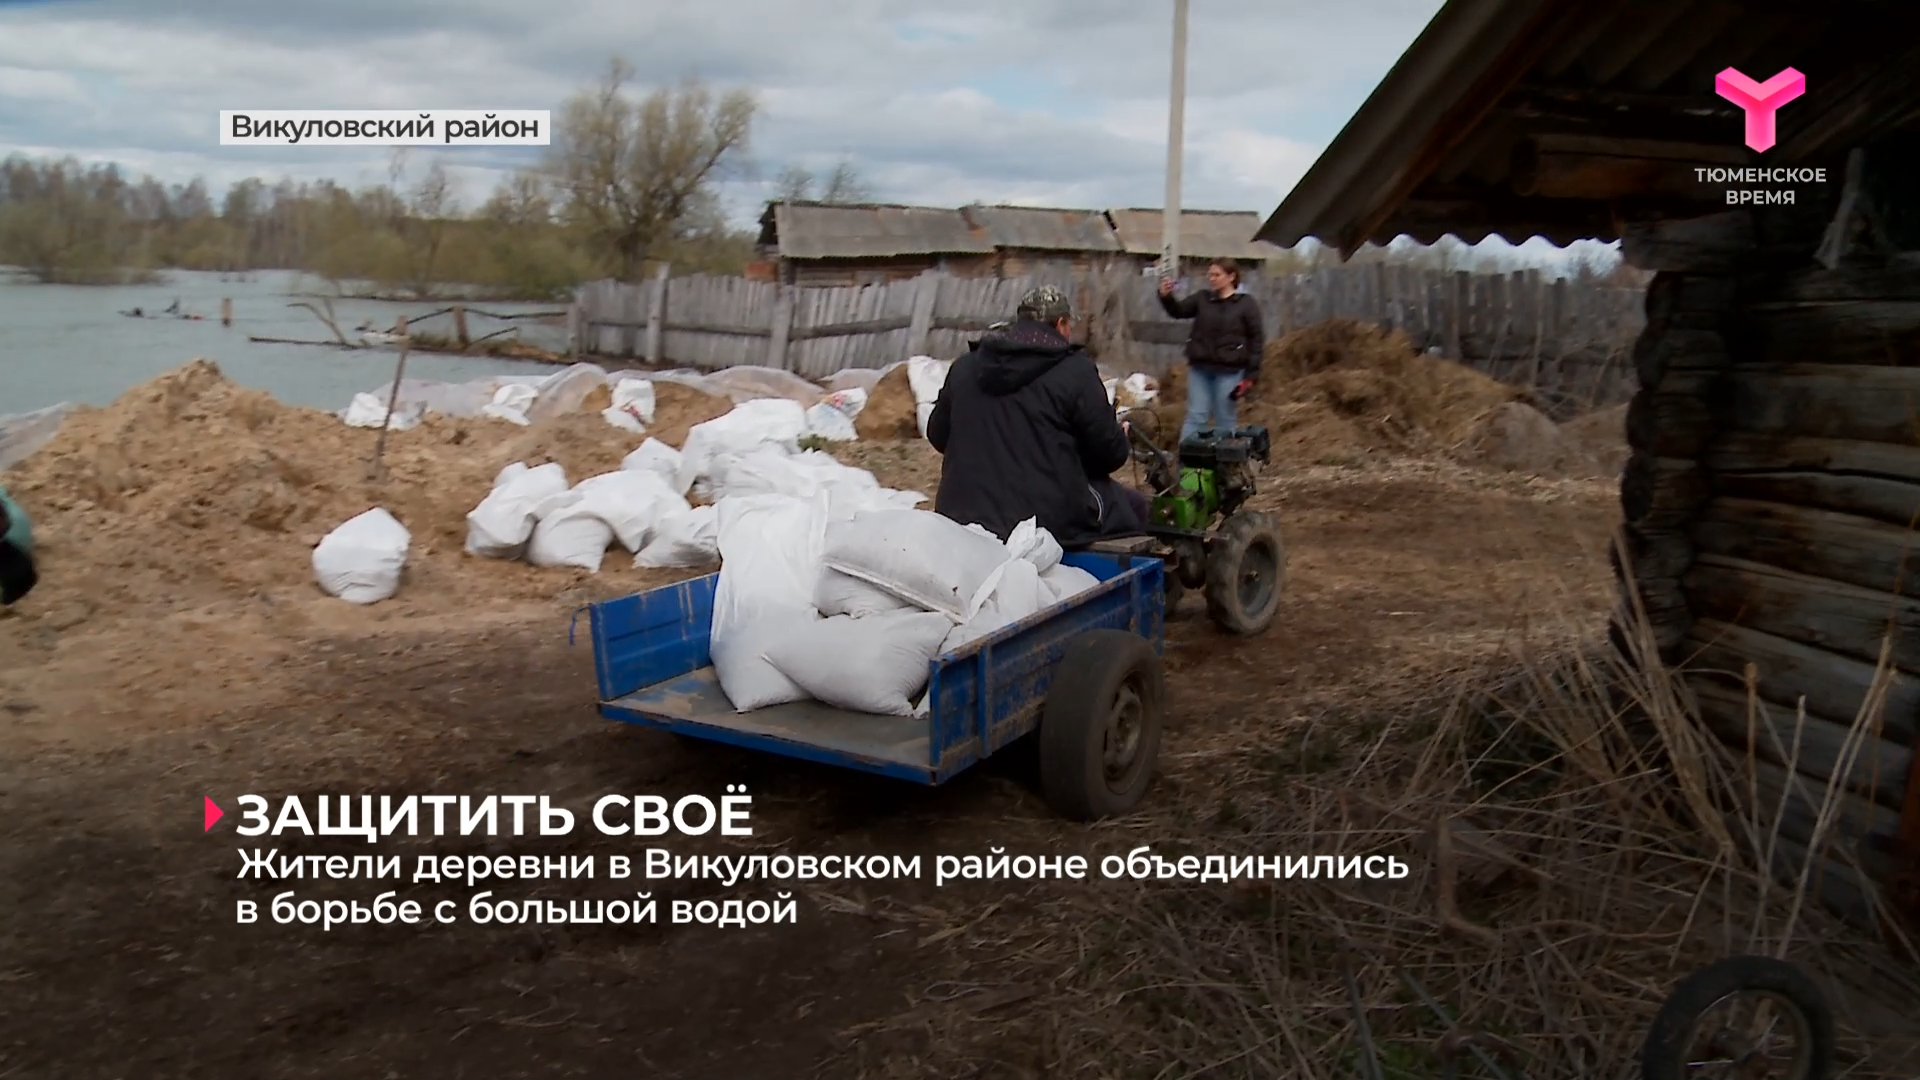 Жители деревни в Викуловском районе объединились в борьбе с большой водой